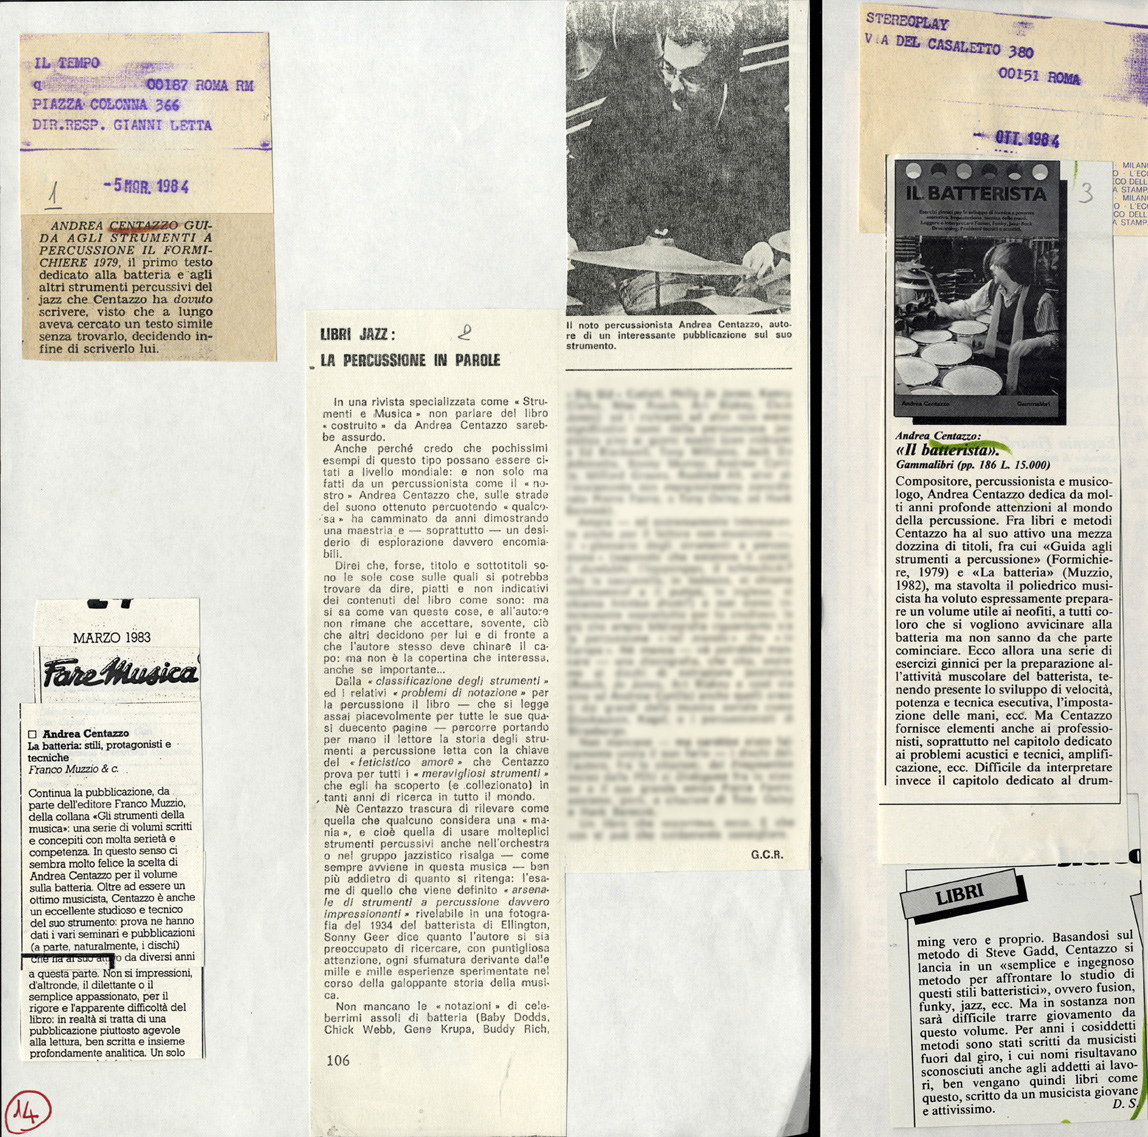 Scritti di Andrea Centazzo sulle percussioni, rassegna stampa, 1983-1984